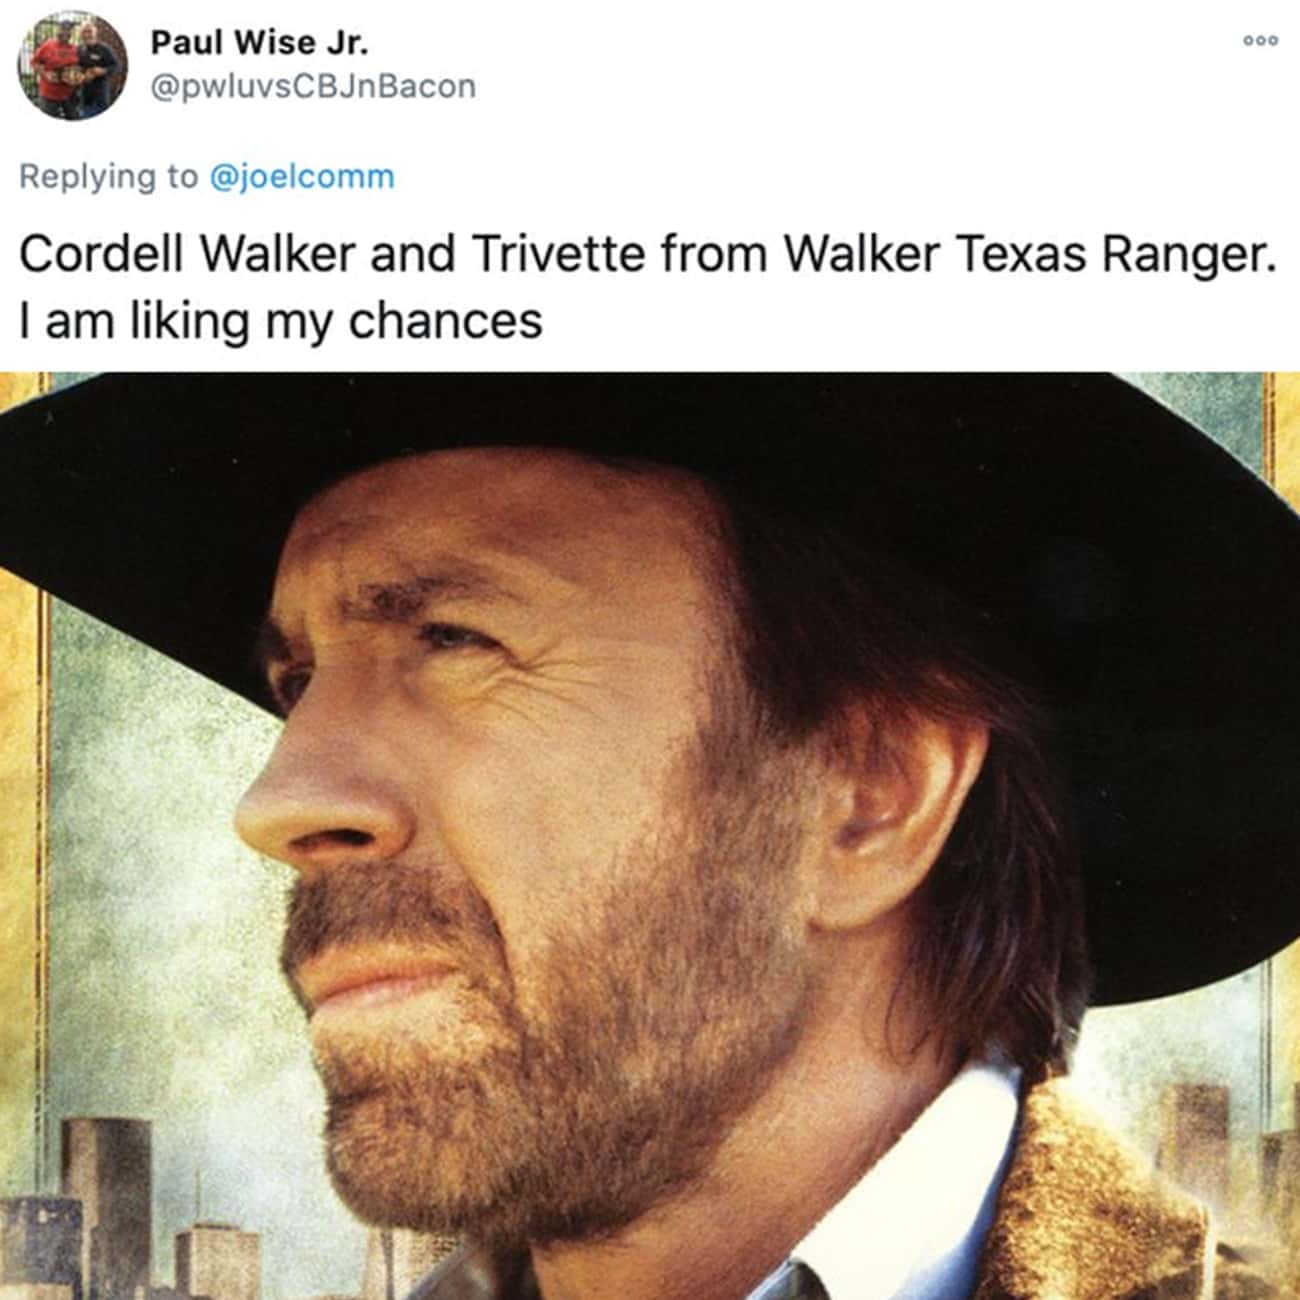 Texas Ranger Cordell Walker